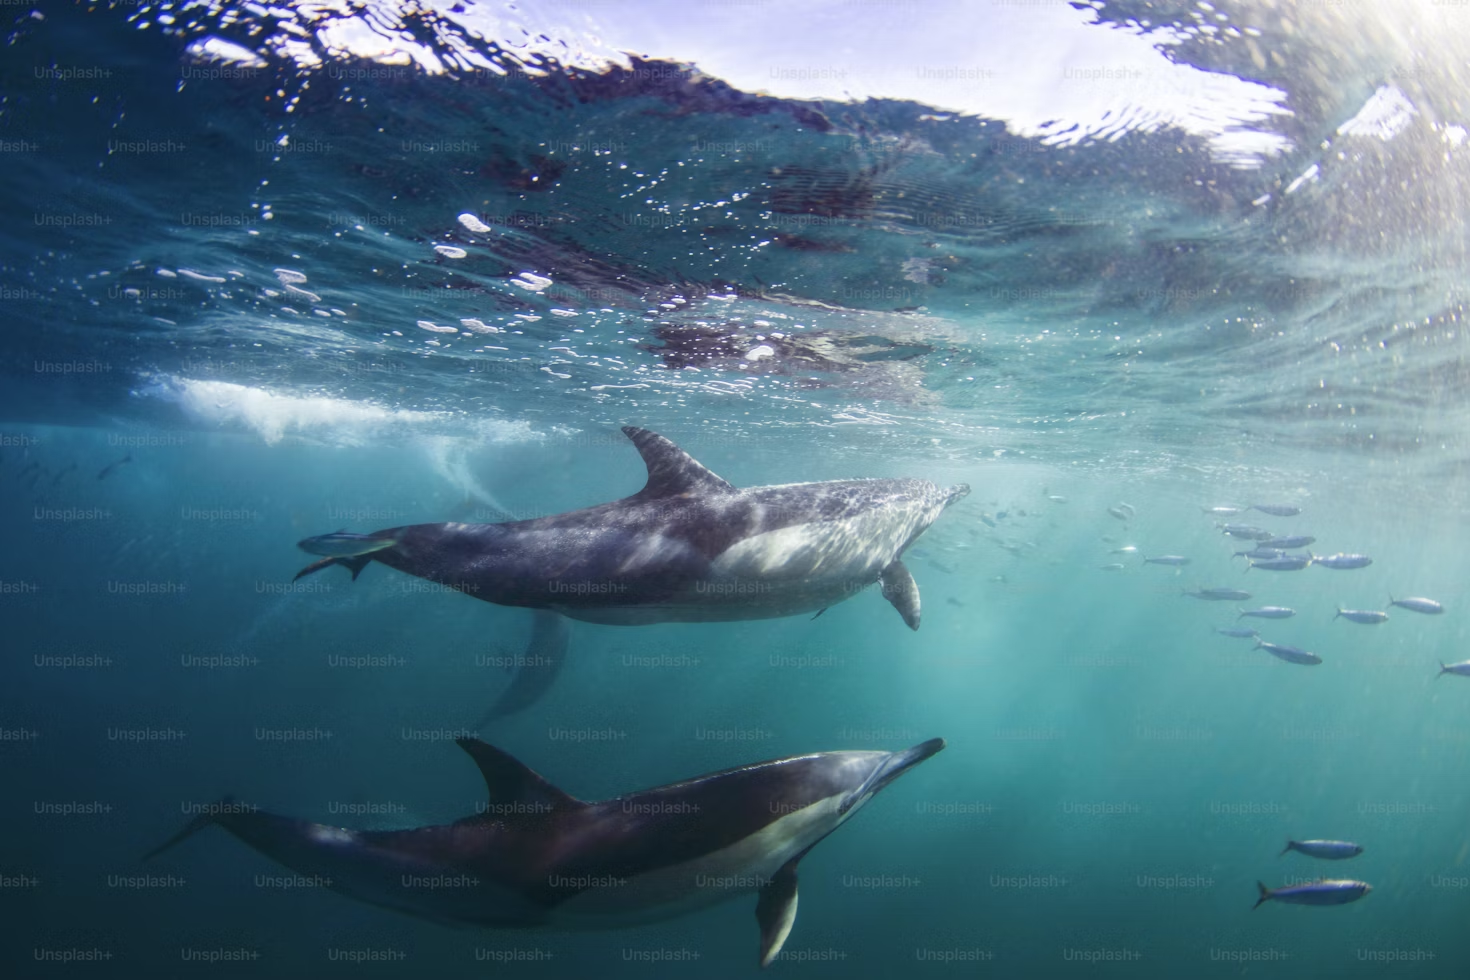 Dolphin Species of Goa